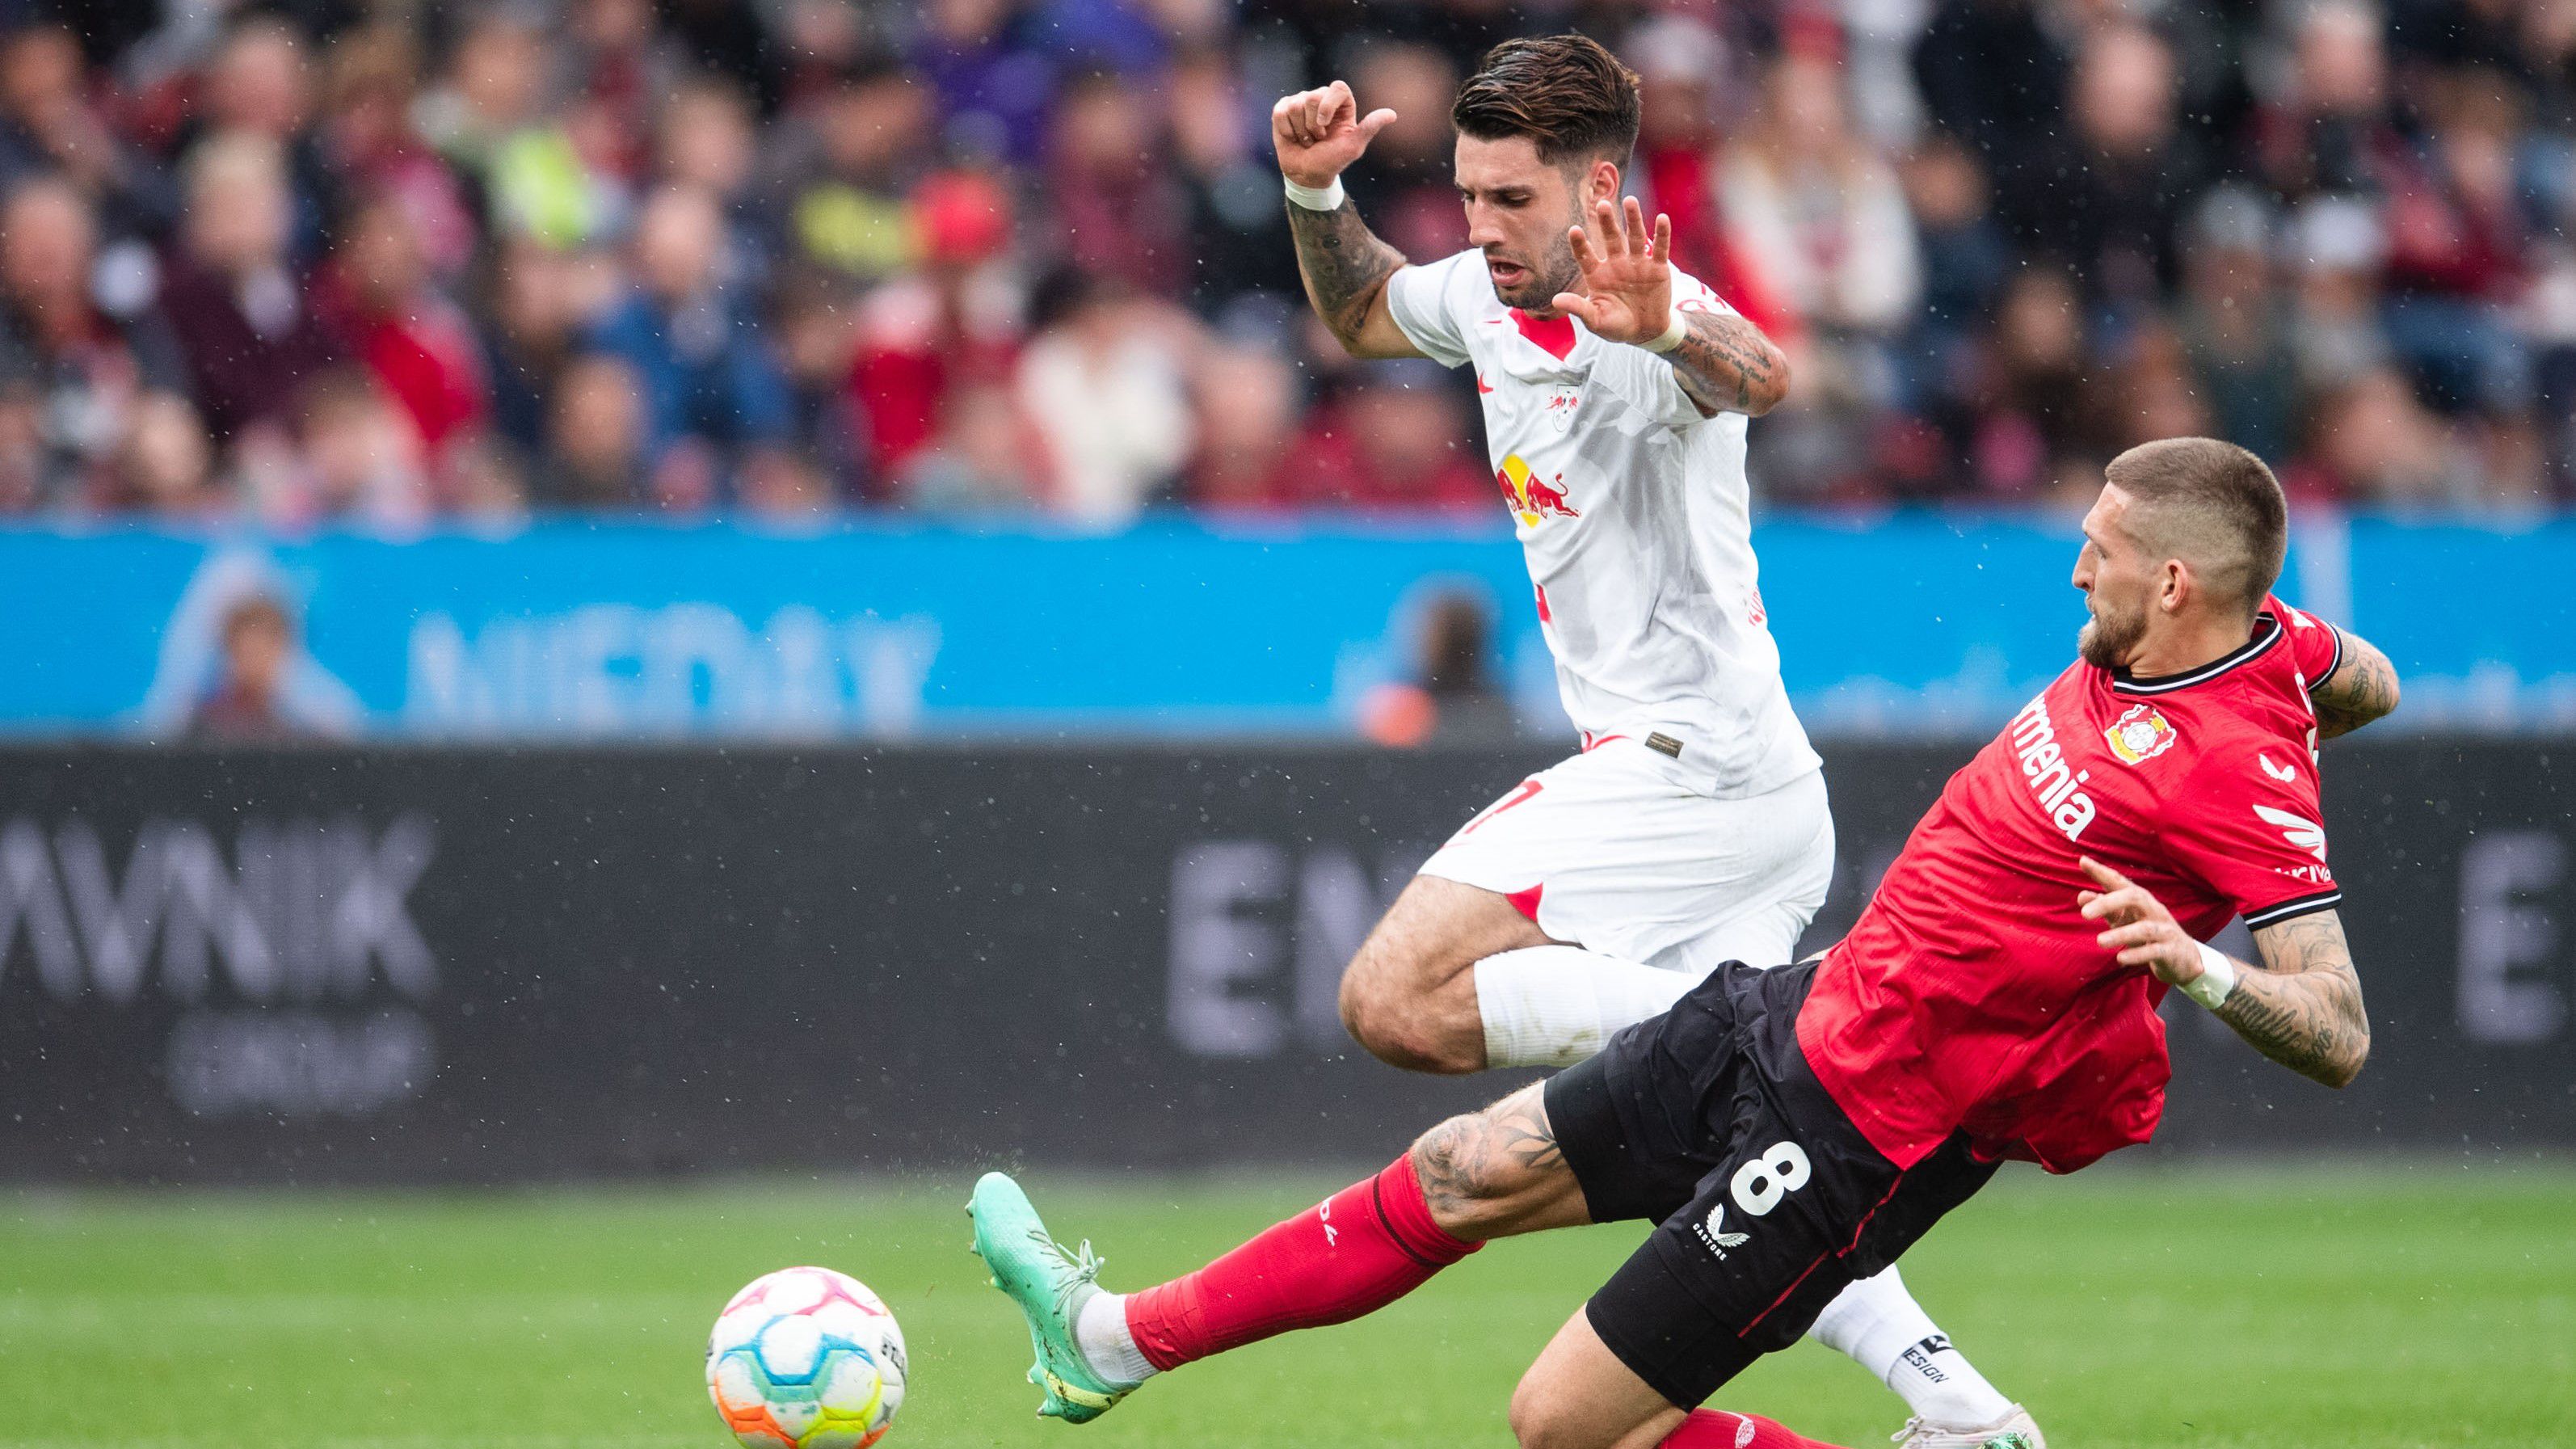 Ezúttal Szoboszlai Dominik sem tudott segíteni a Lipcsének, a magyar középpályást a 86. percben második sárga lappal állította ki a játékvezető. A Leverkusen otthonában elszenvedett 2–0-ás vereség után a Lipcse az ötödik helyre csúszott vissza.